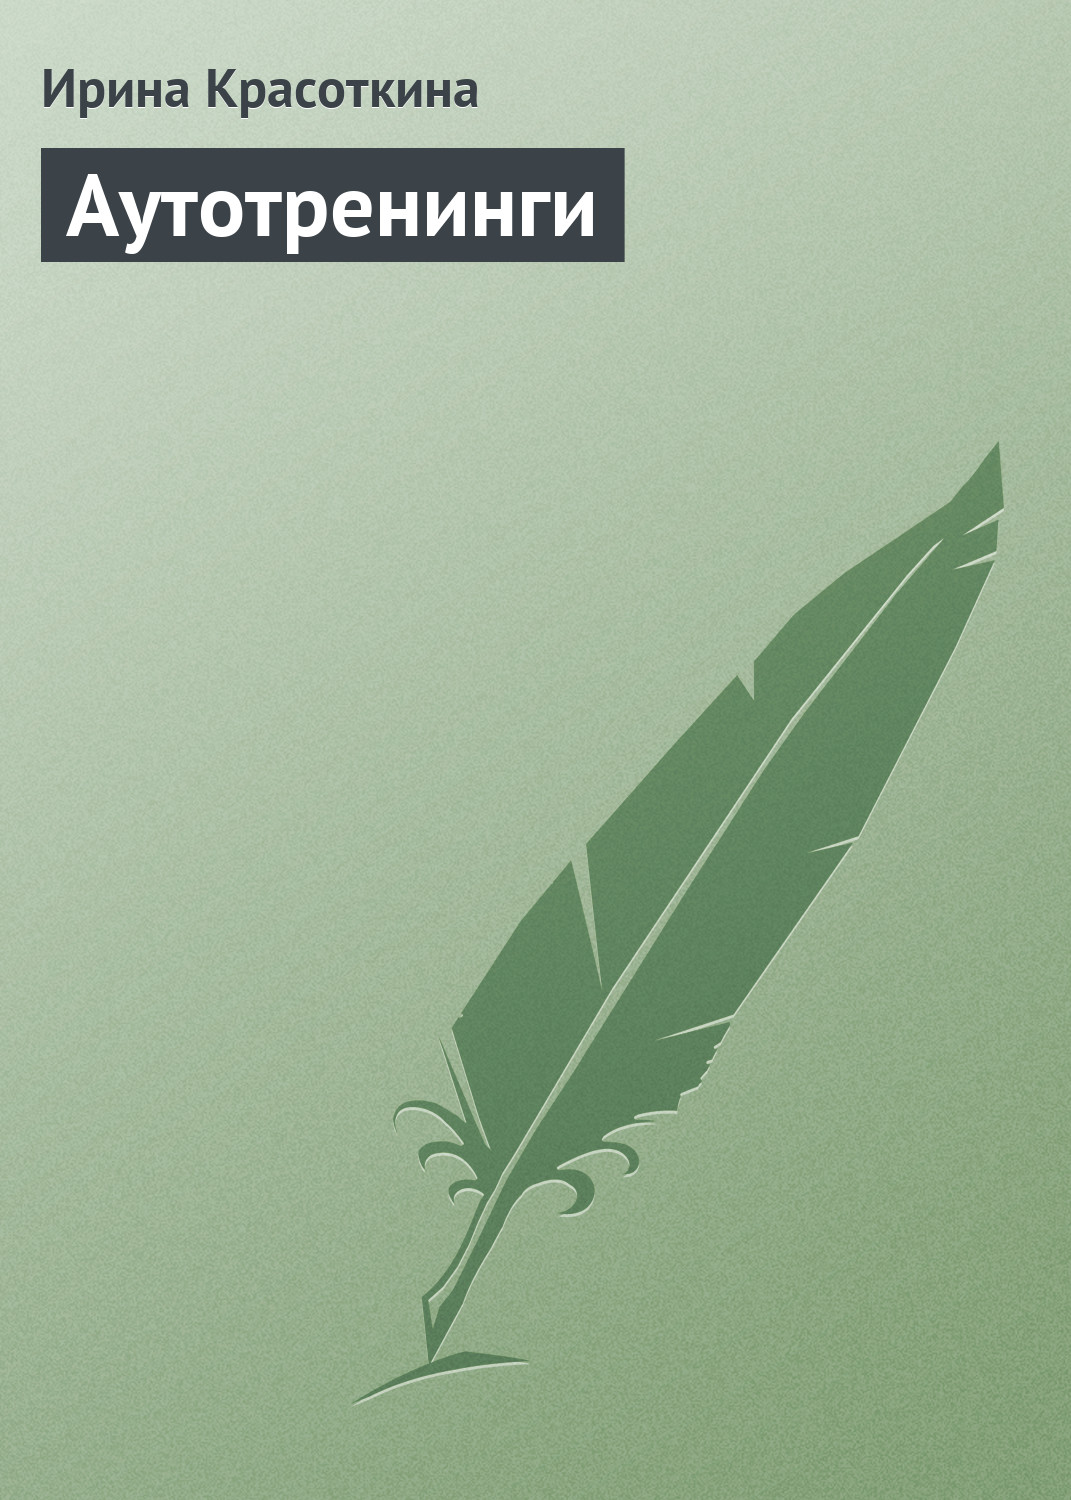 Книга Аутотренинги из серии , созданная Ирина Красоткина, может относится к жанру Личностный рост. Стоимость электронной книги Аутотренинги с идентификатором 171680 составляет 229.00 руб.